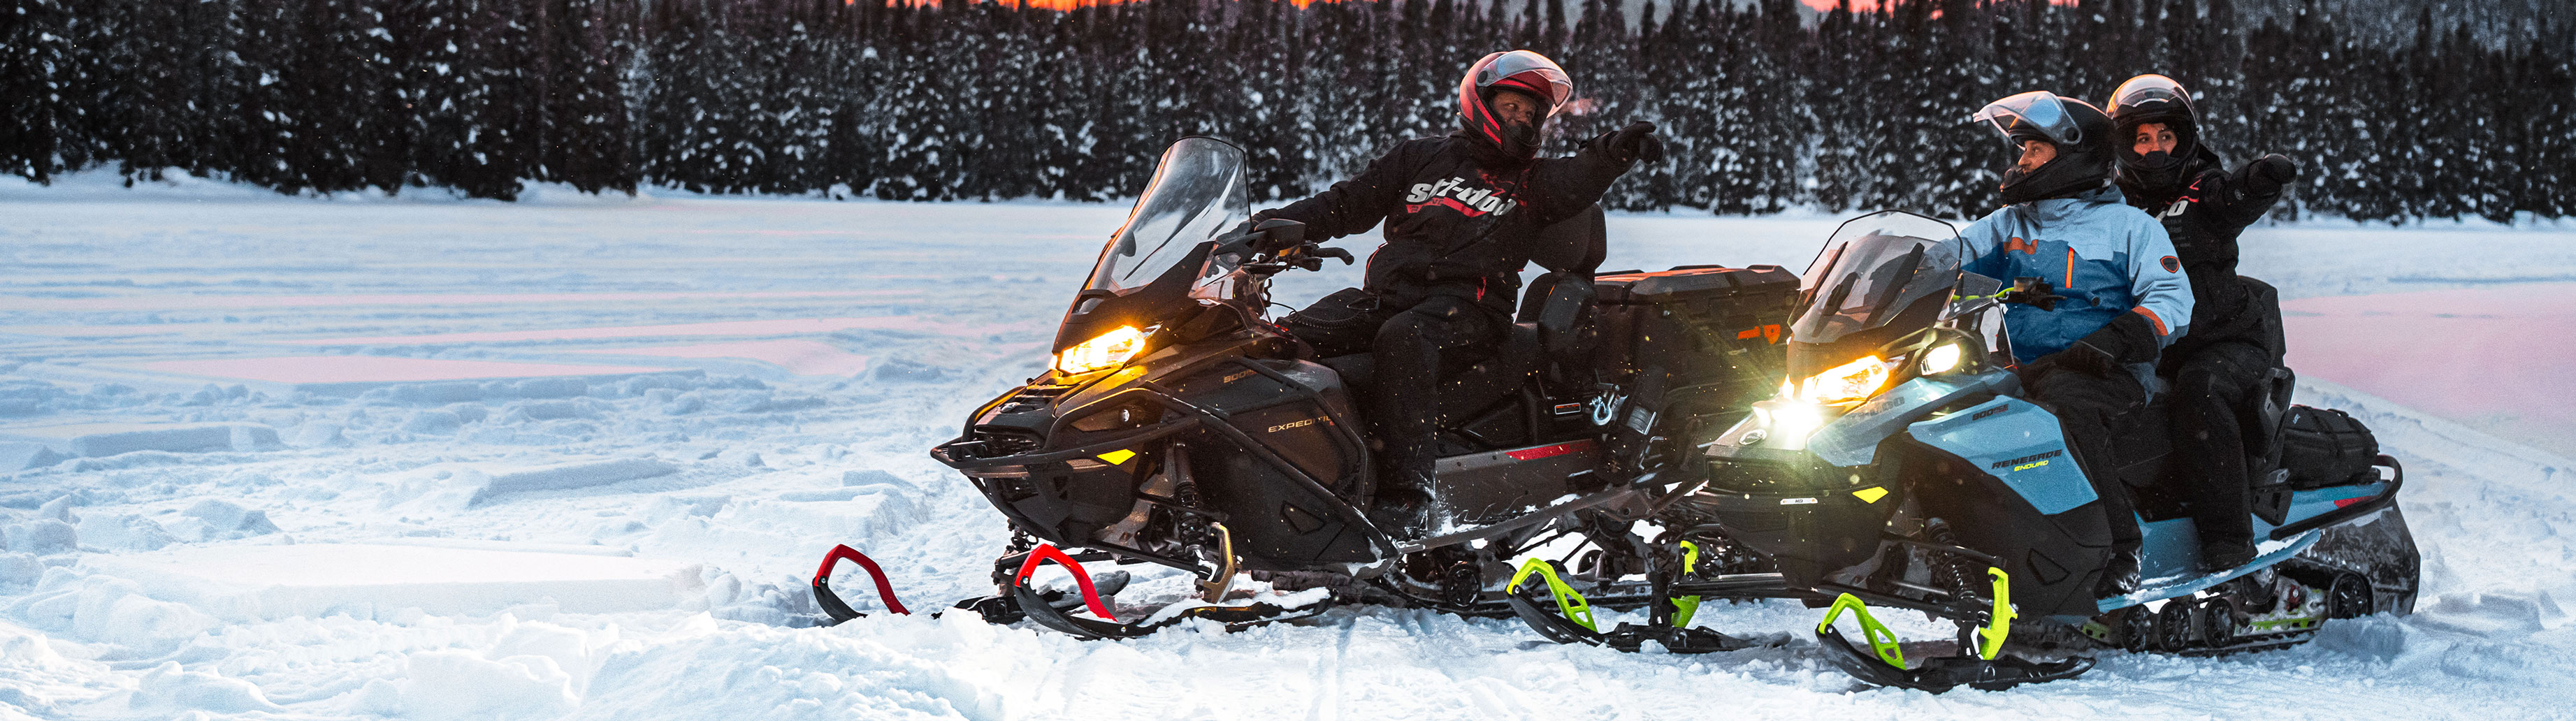 ski-doo kar motosikleti sürücüsü ile dağlarda gezinirken